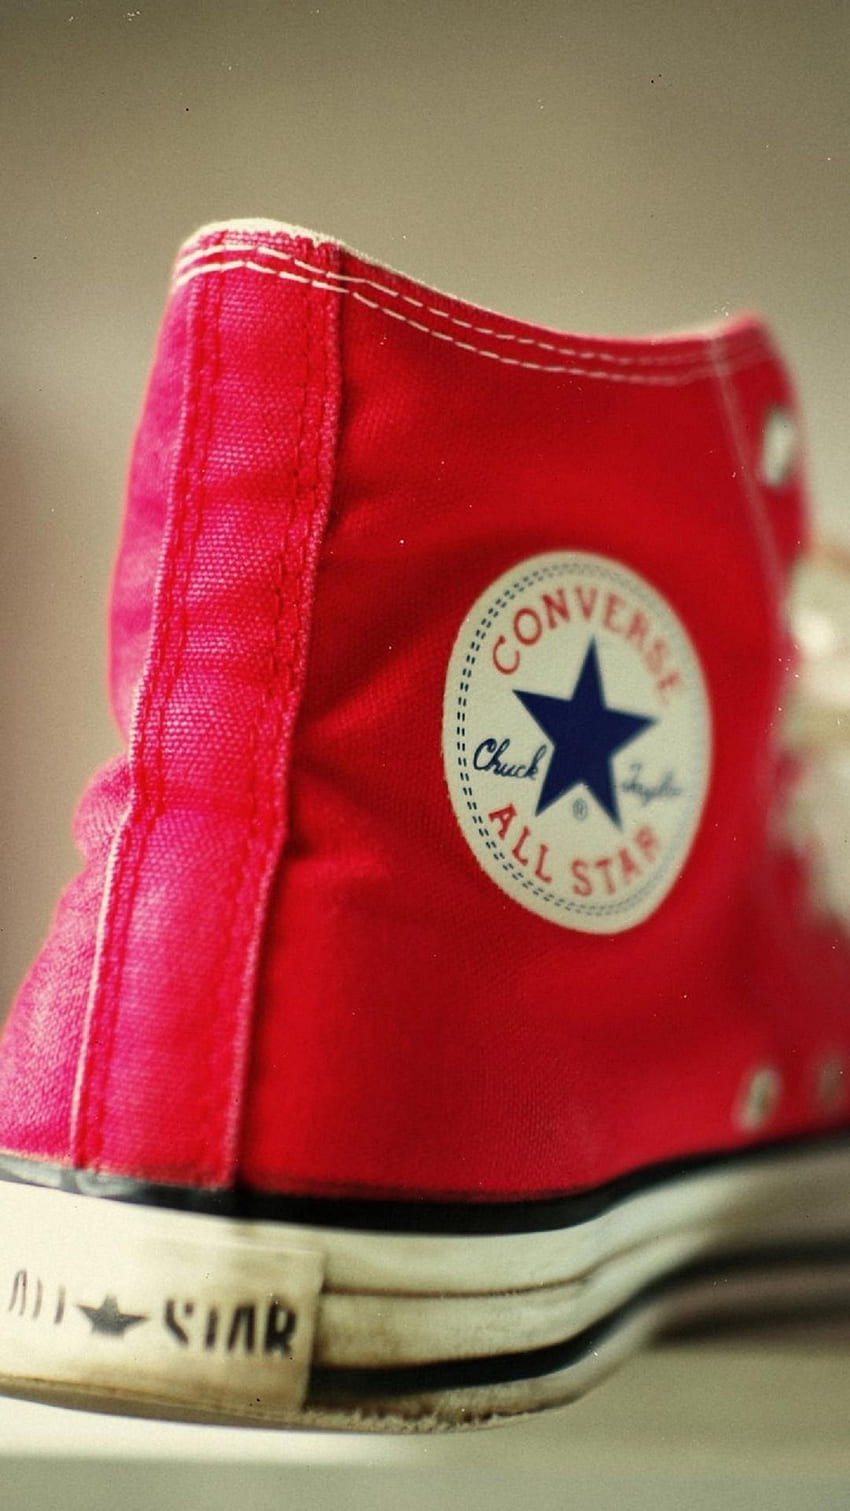 Червени обувки Converse - Android . All star, Converse, Rosso HD тапет за телефон